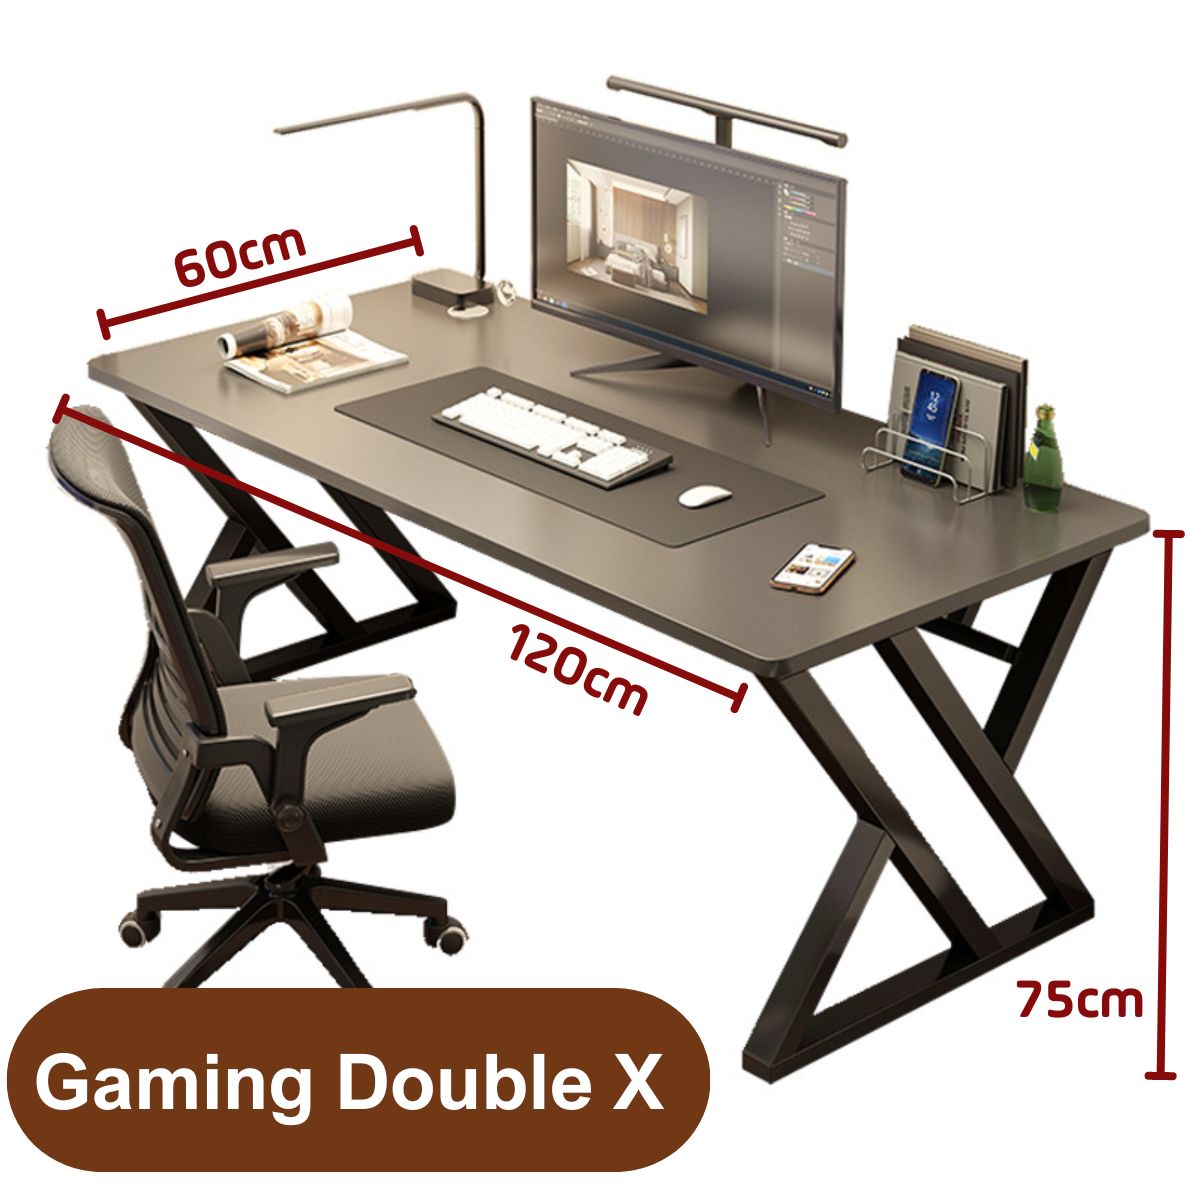 Bàn học, bàn làm việc Gaming chân chữ K cao cấp đầy đủ phụ kiện, Bàn Gaming chân Double X thiết kế hiện đại kiên cố vững chắc 2 màu trắng và đen